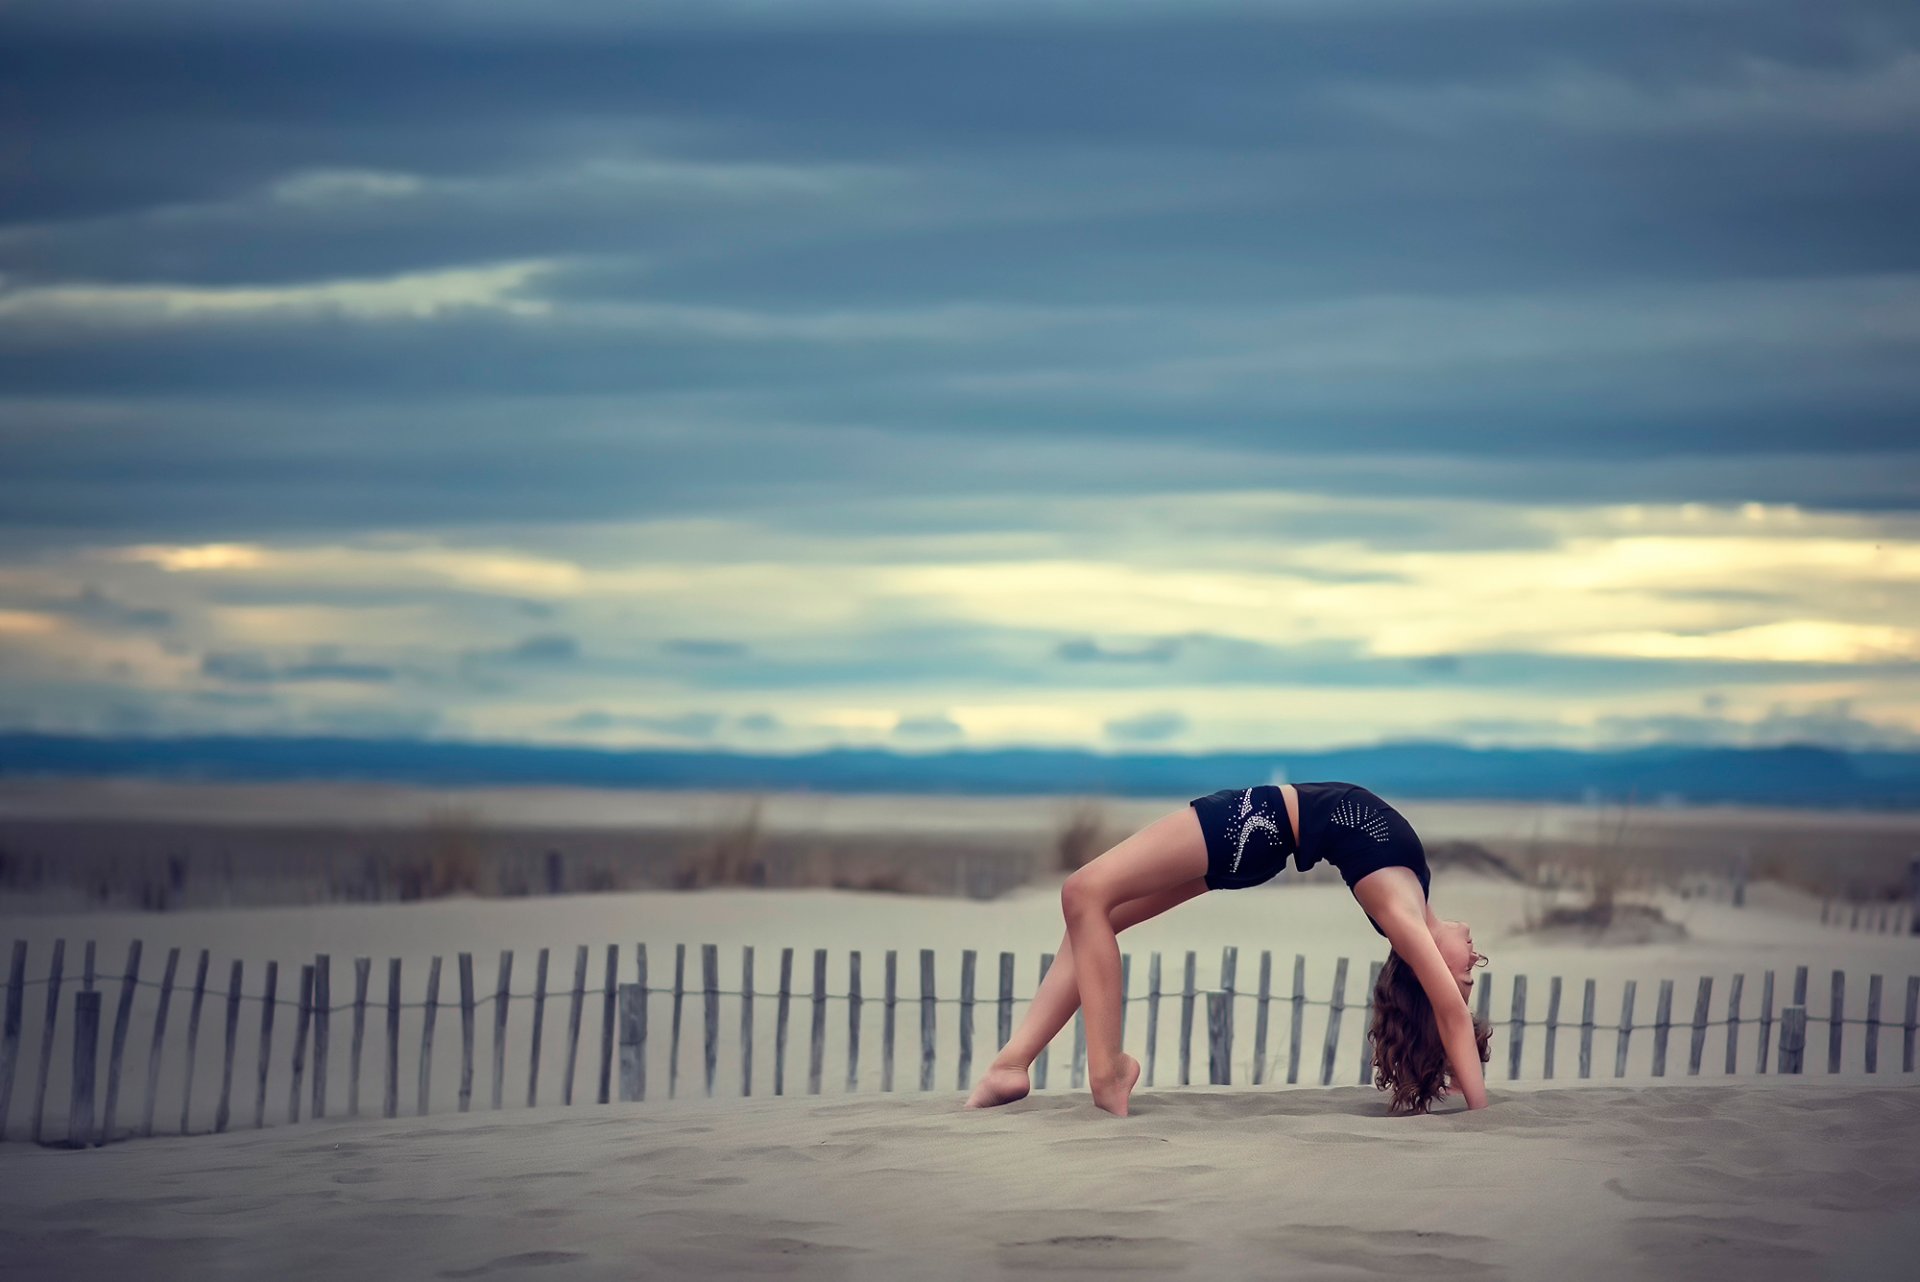 Девушка гимнастка на песке Обои на рабочий стол.